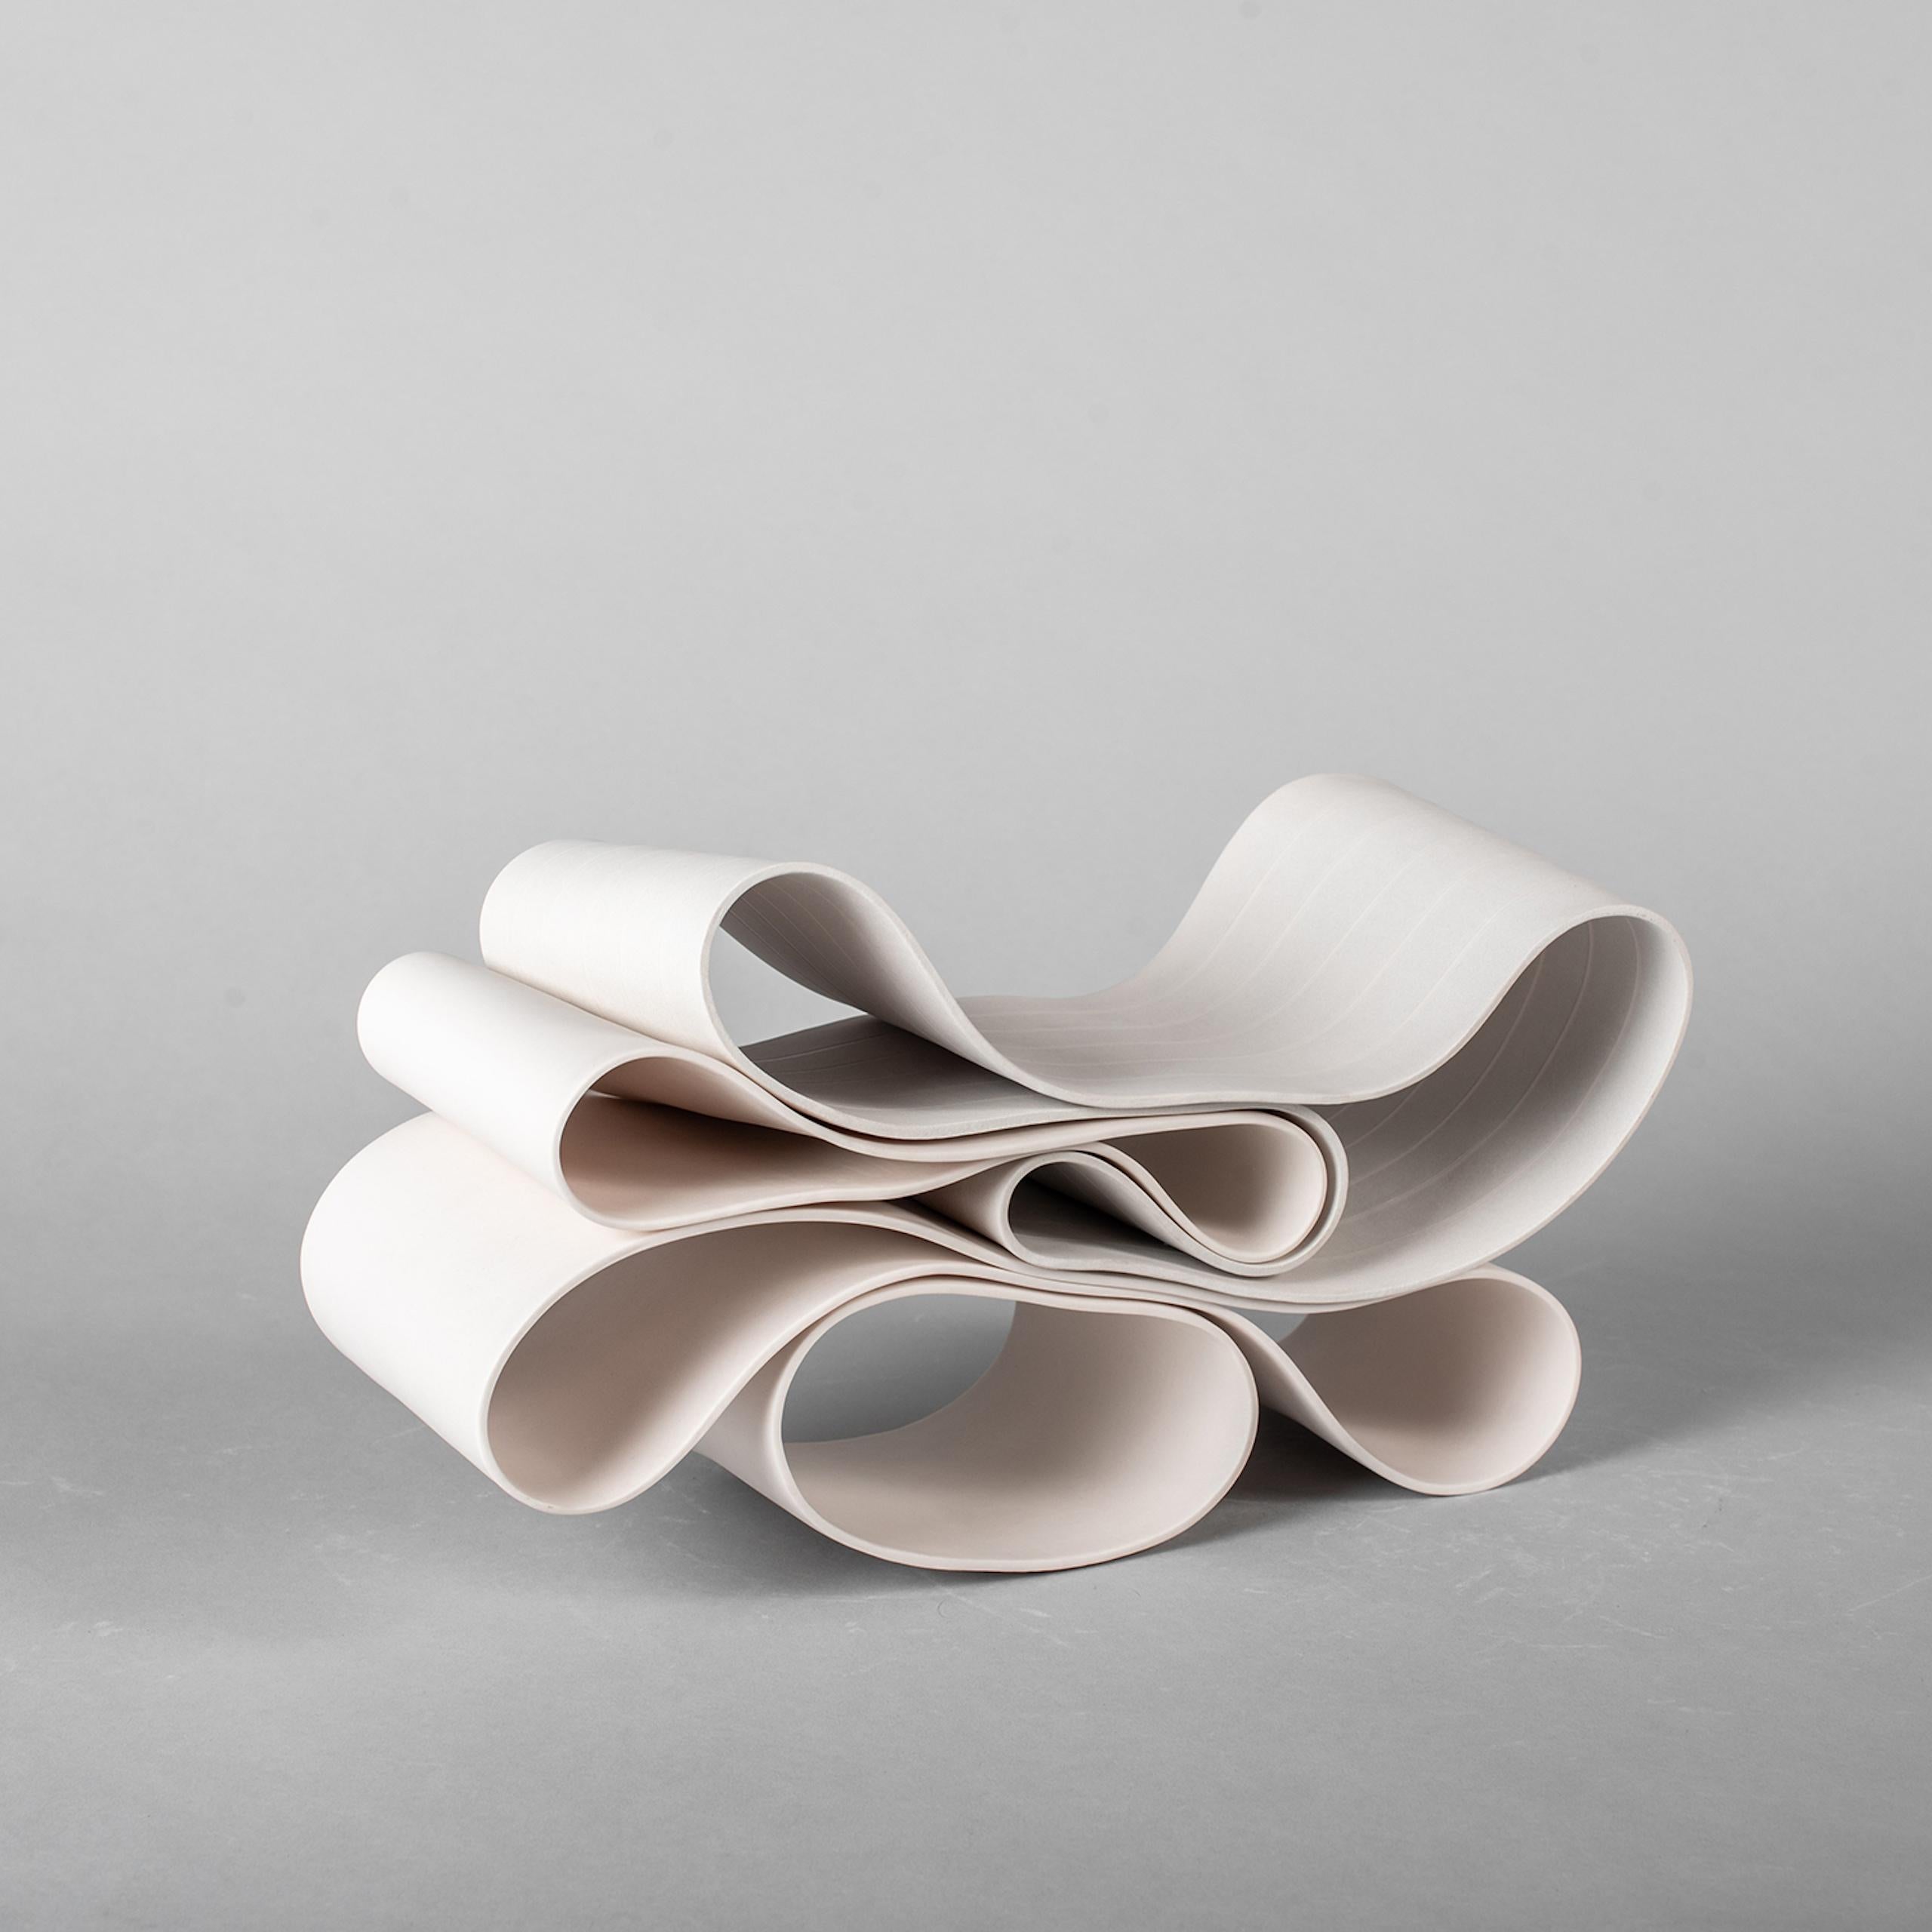 Folding in Motion 10 est une sculpture unique en porcelaine de papier de l'artiste contemporain Simcha Even-Chen, dont les dimensions sont de 16 cm × 30 cm × 11 cm (6,3 × 11,8 × 4,3 in). La sculpture est signée et accompagnée d'un certificat